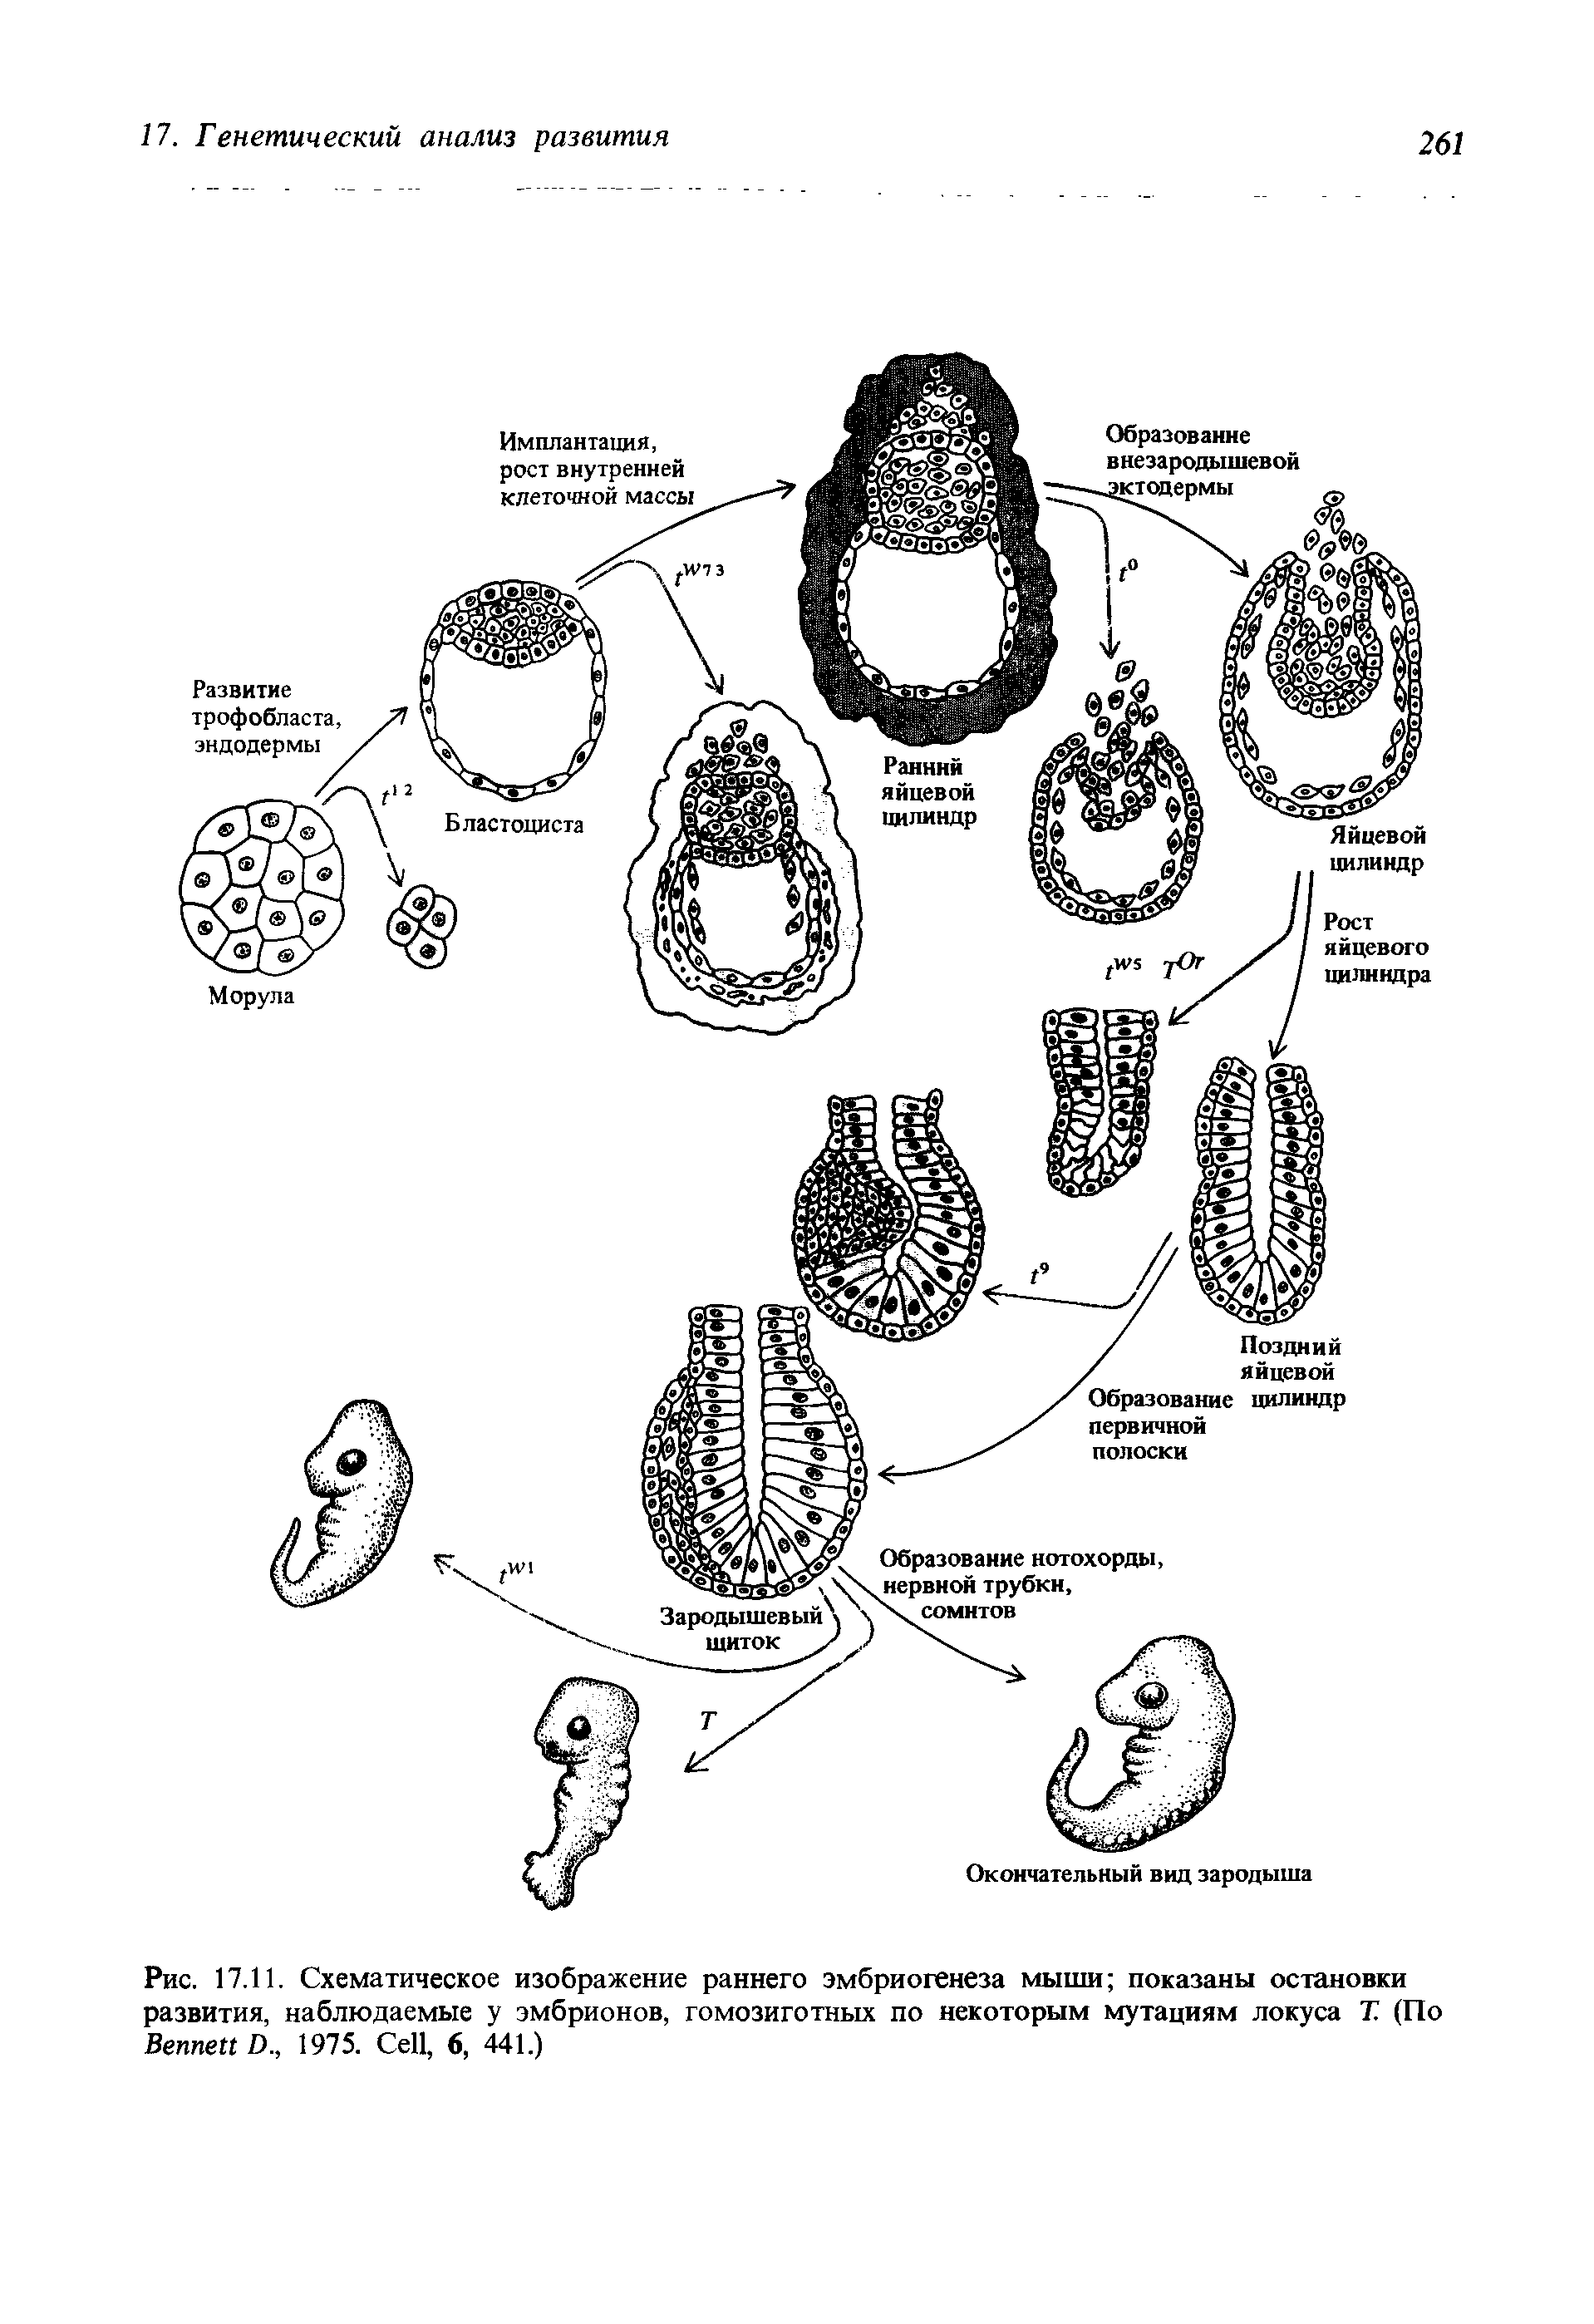 Рис. 17.11. Схематическое изображение раннего эмбриогенеза мыши показаны остановки развития, наблюдаемые у эмбрионов, гомозиготных по некоторым мутациям локуса Т. (По B D., 1975. C , 6, 441.)...